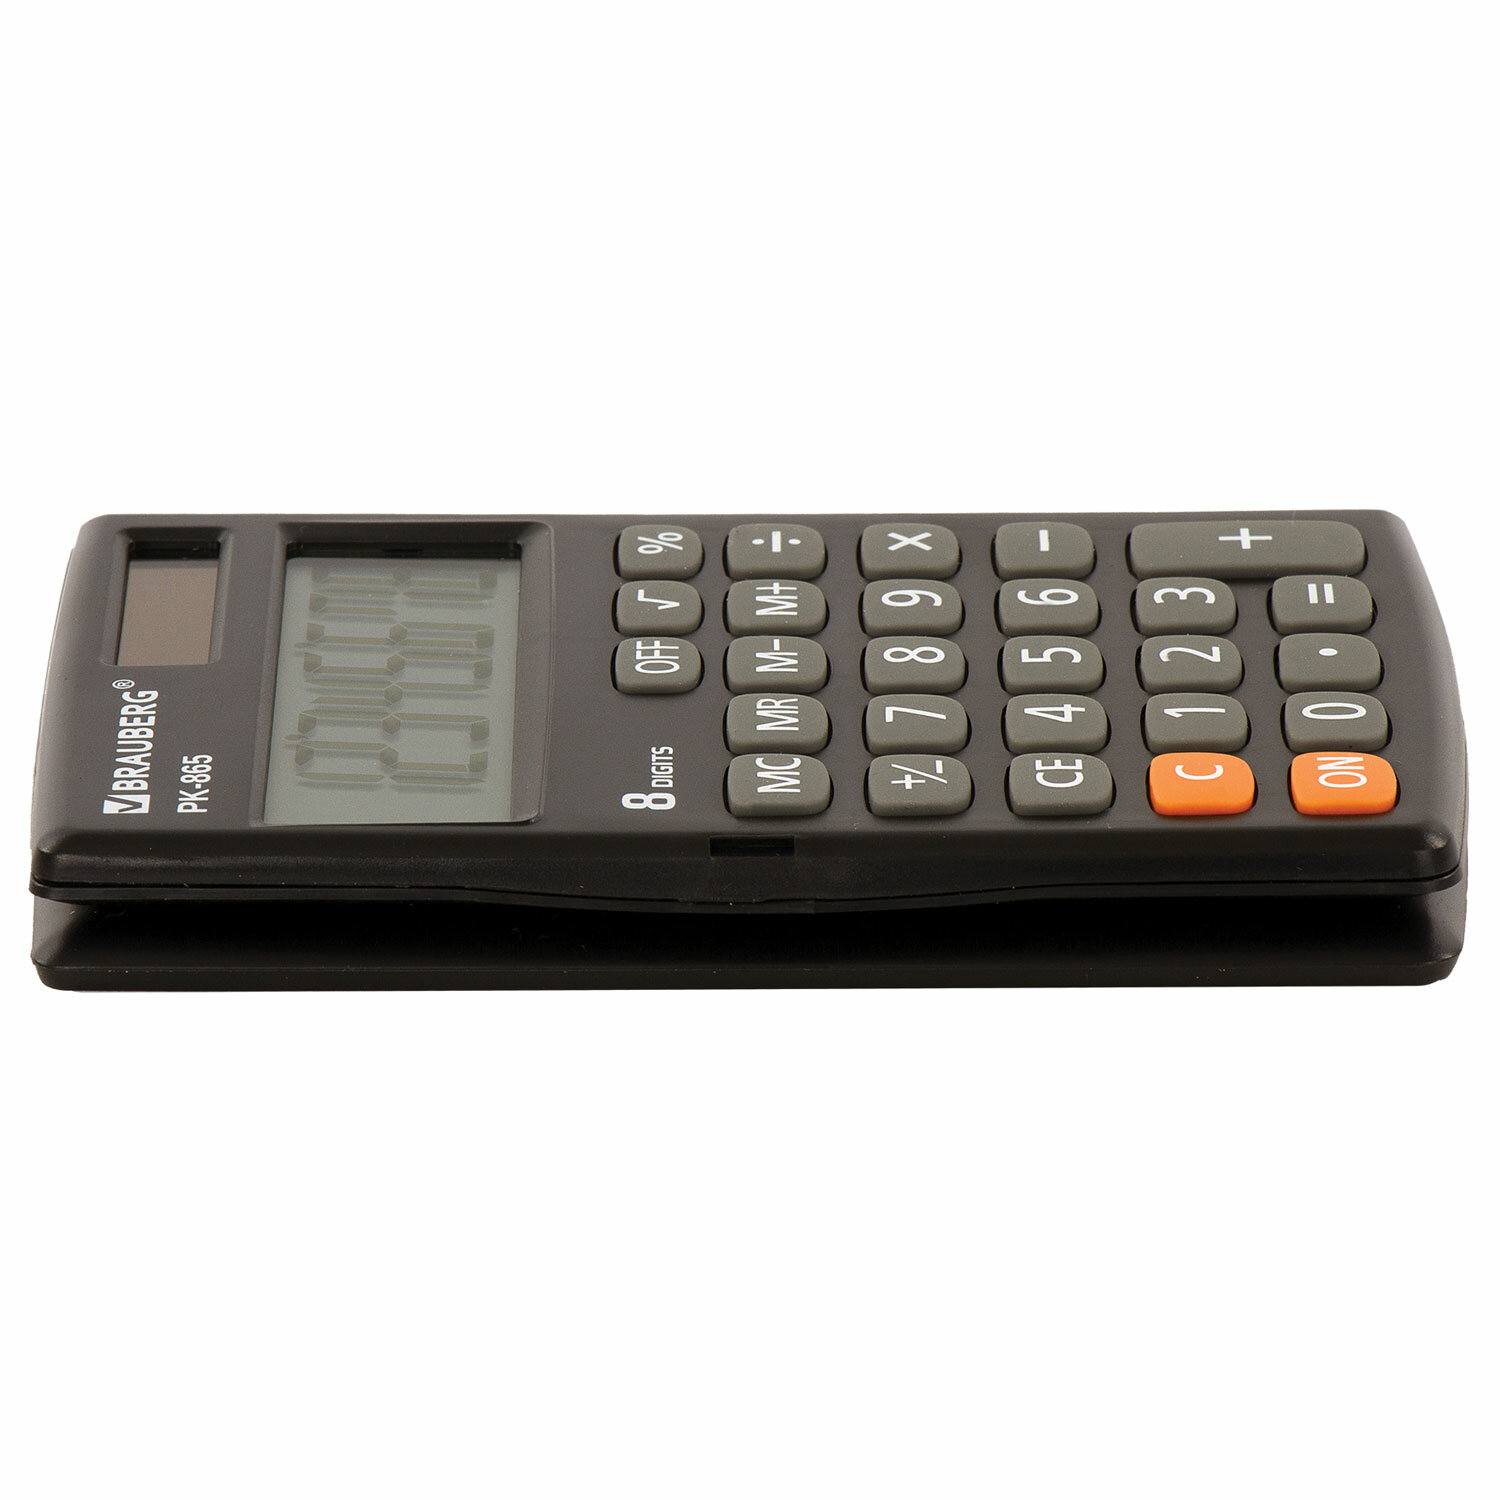 картинка Калькулятор карманный, 8 разрядов, 12*7,5 см, двойное питание, черный, "PK-865-BK", BRAUBERG, 250524 от магазина Альфанит в Кунгуре